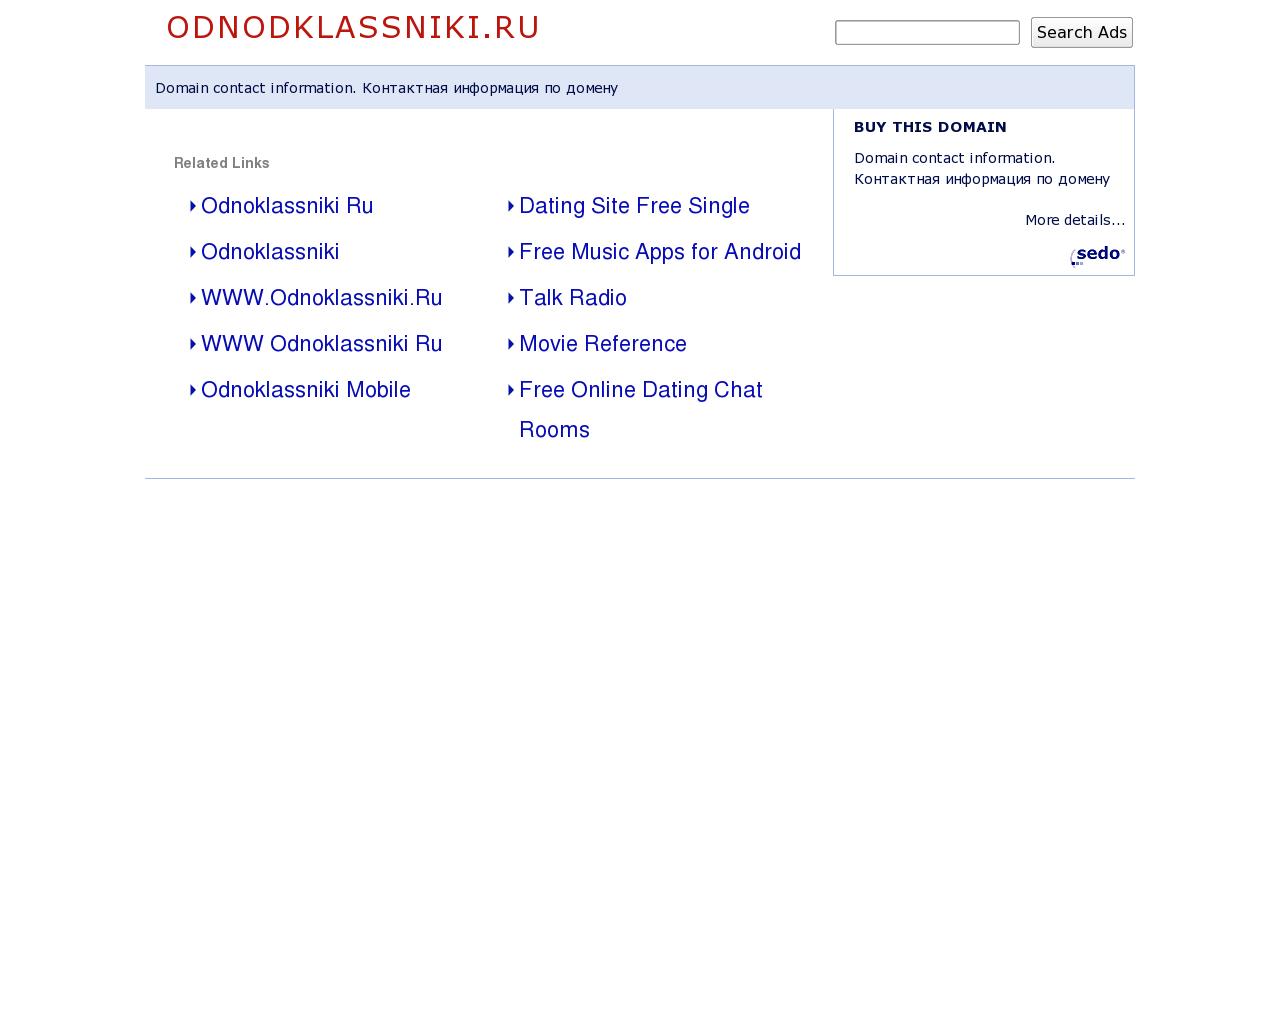 Изображение сайта odnodklassniki.ru в разрешении 1280x1024